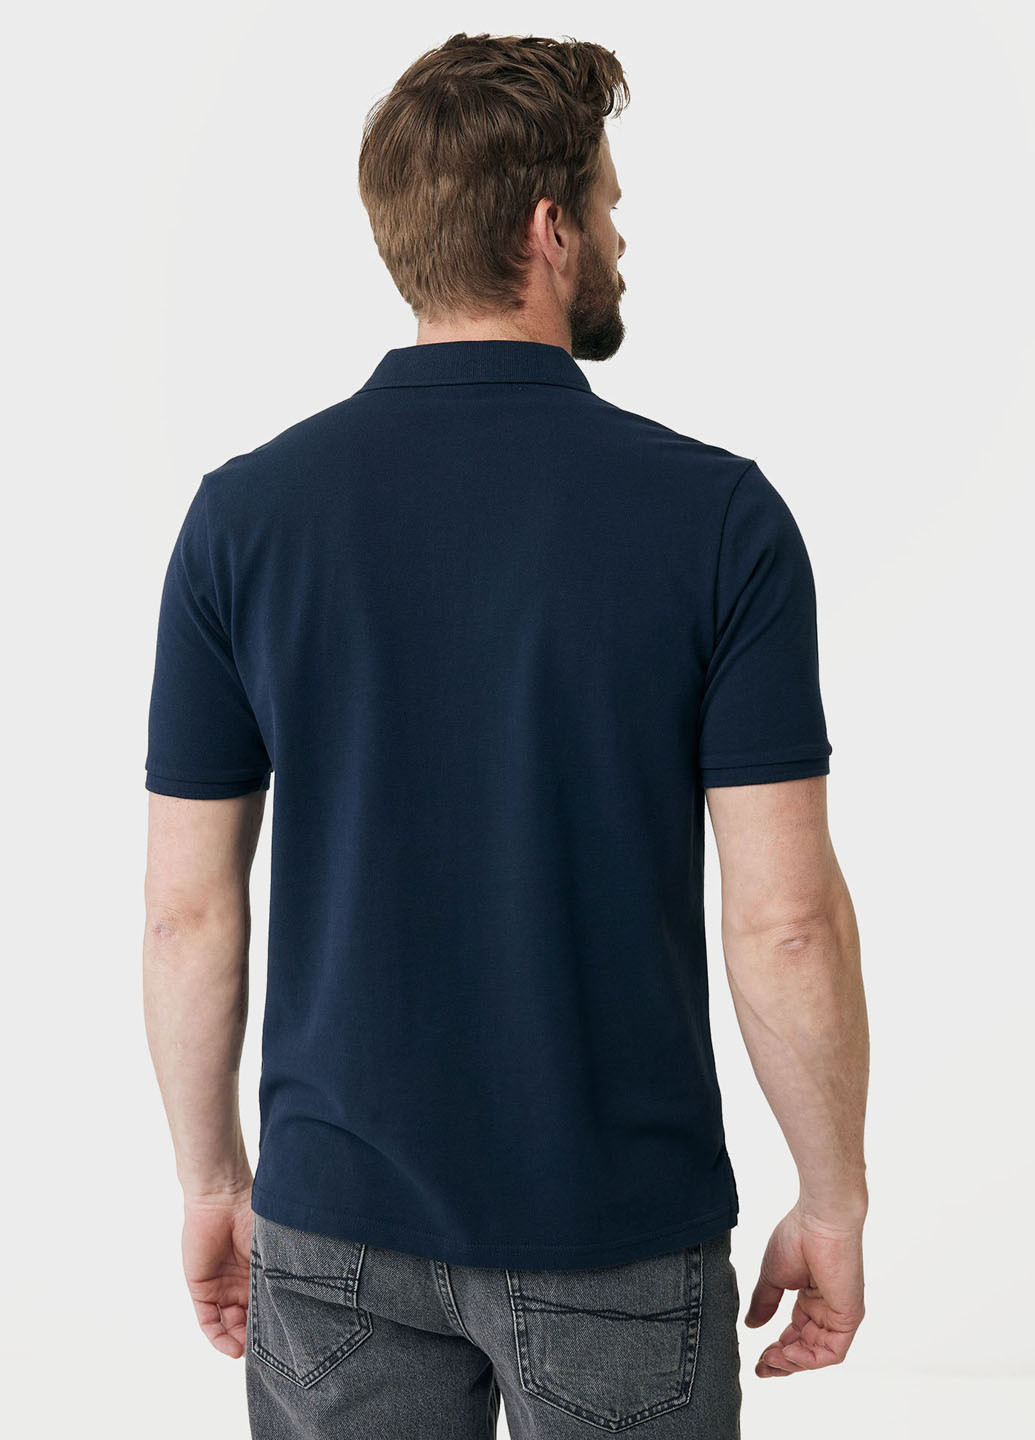 Синяя футболка-поло для мужчин Mexx с логотипом